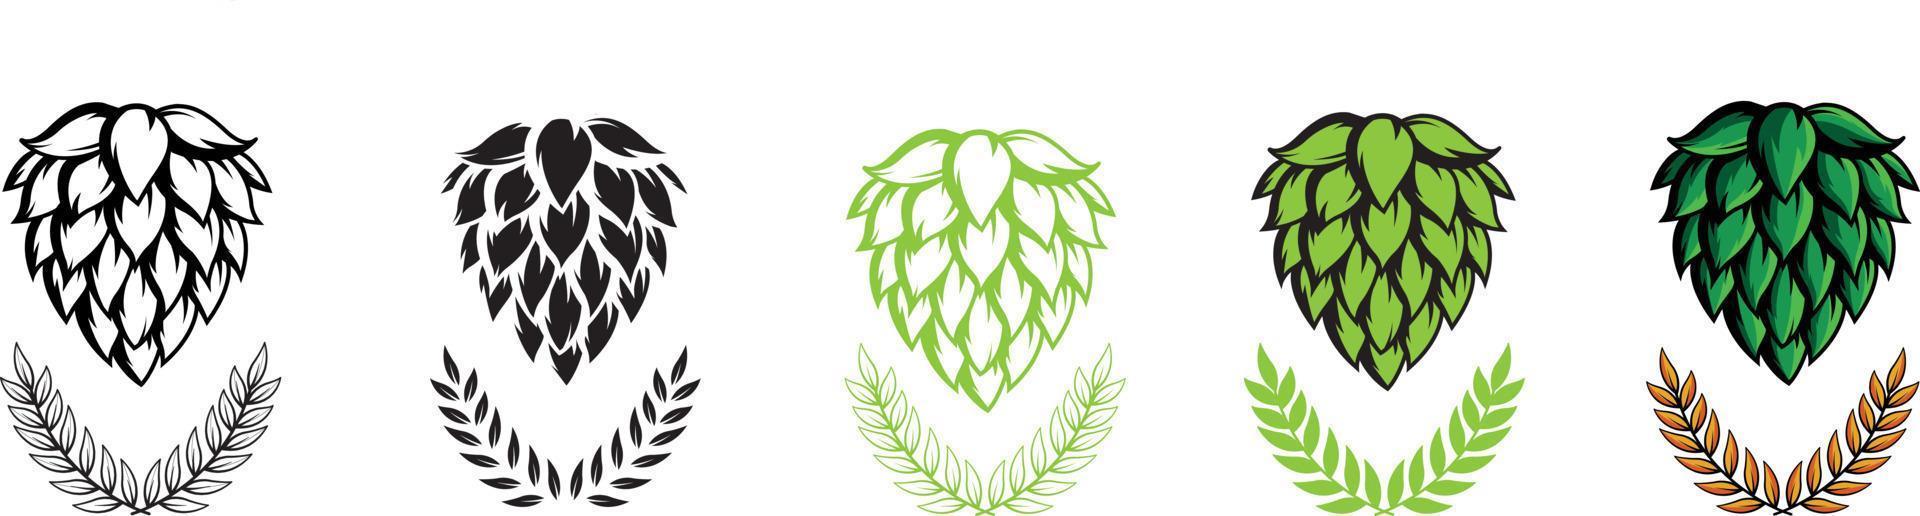 houblon image vectorielle icônes ou logos graphiques visuels, idéaux pour la bière, le stout, la lager, les étiquettes amères et les emballages. vecteur